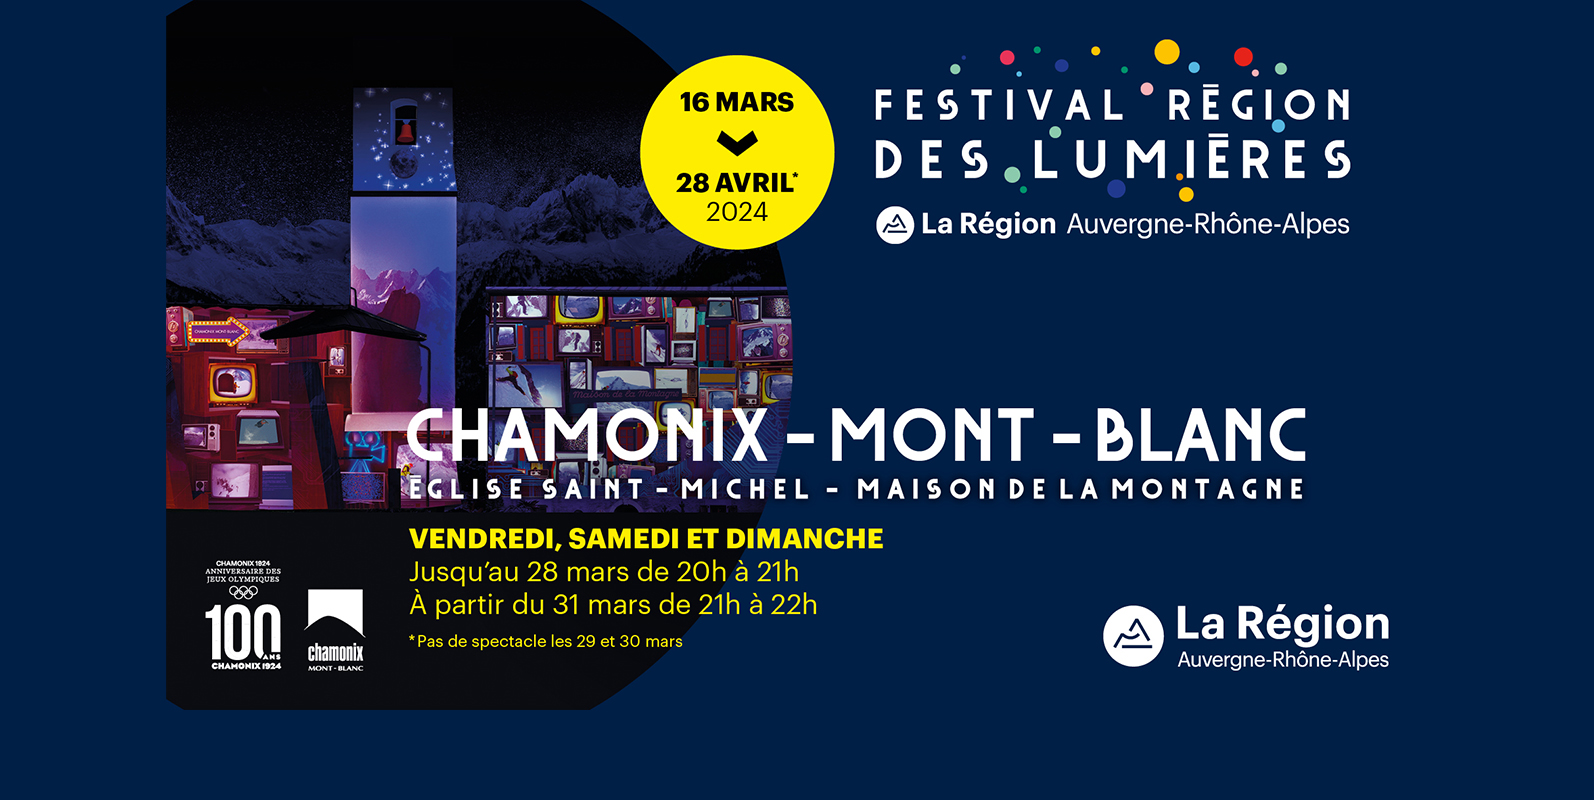 Festival Région des Lumières à Chamonix-Mont-Blanc jusqu'au 28 avril 2024